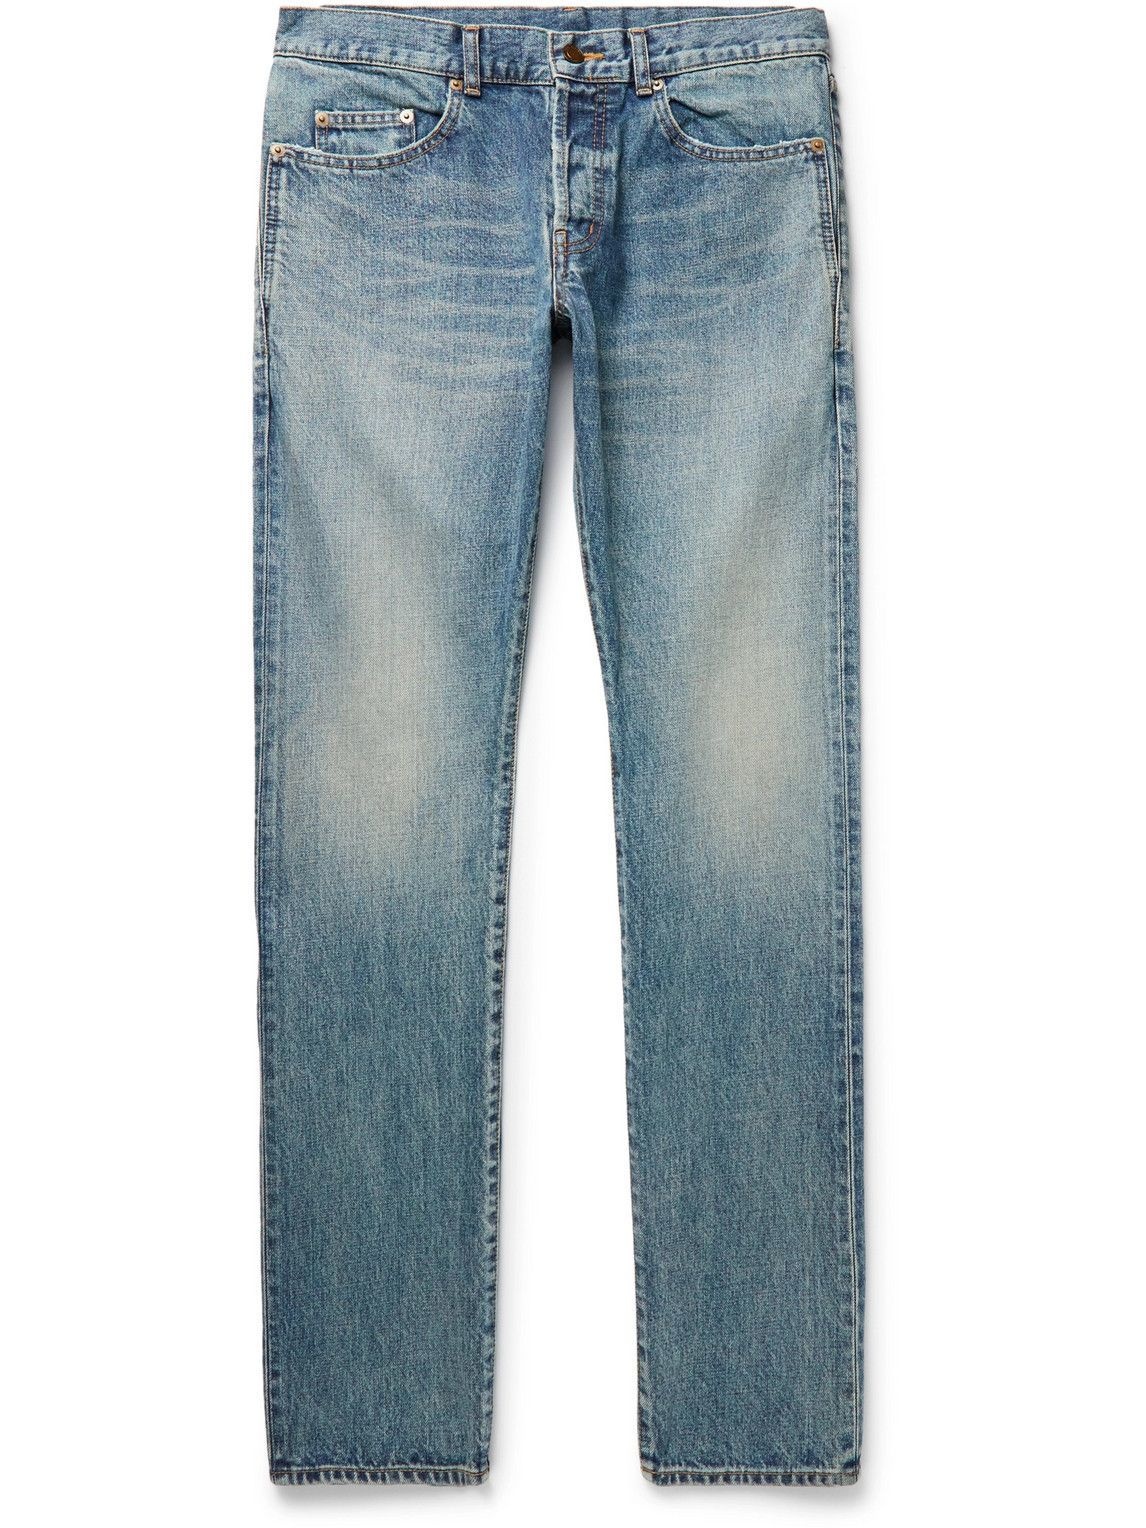 SAINT LAURENT - Slim-Fit Distressed Jeans - Blue Saint Laurent